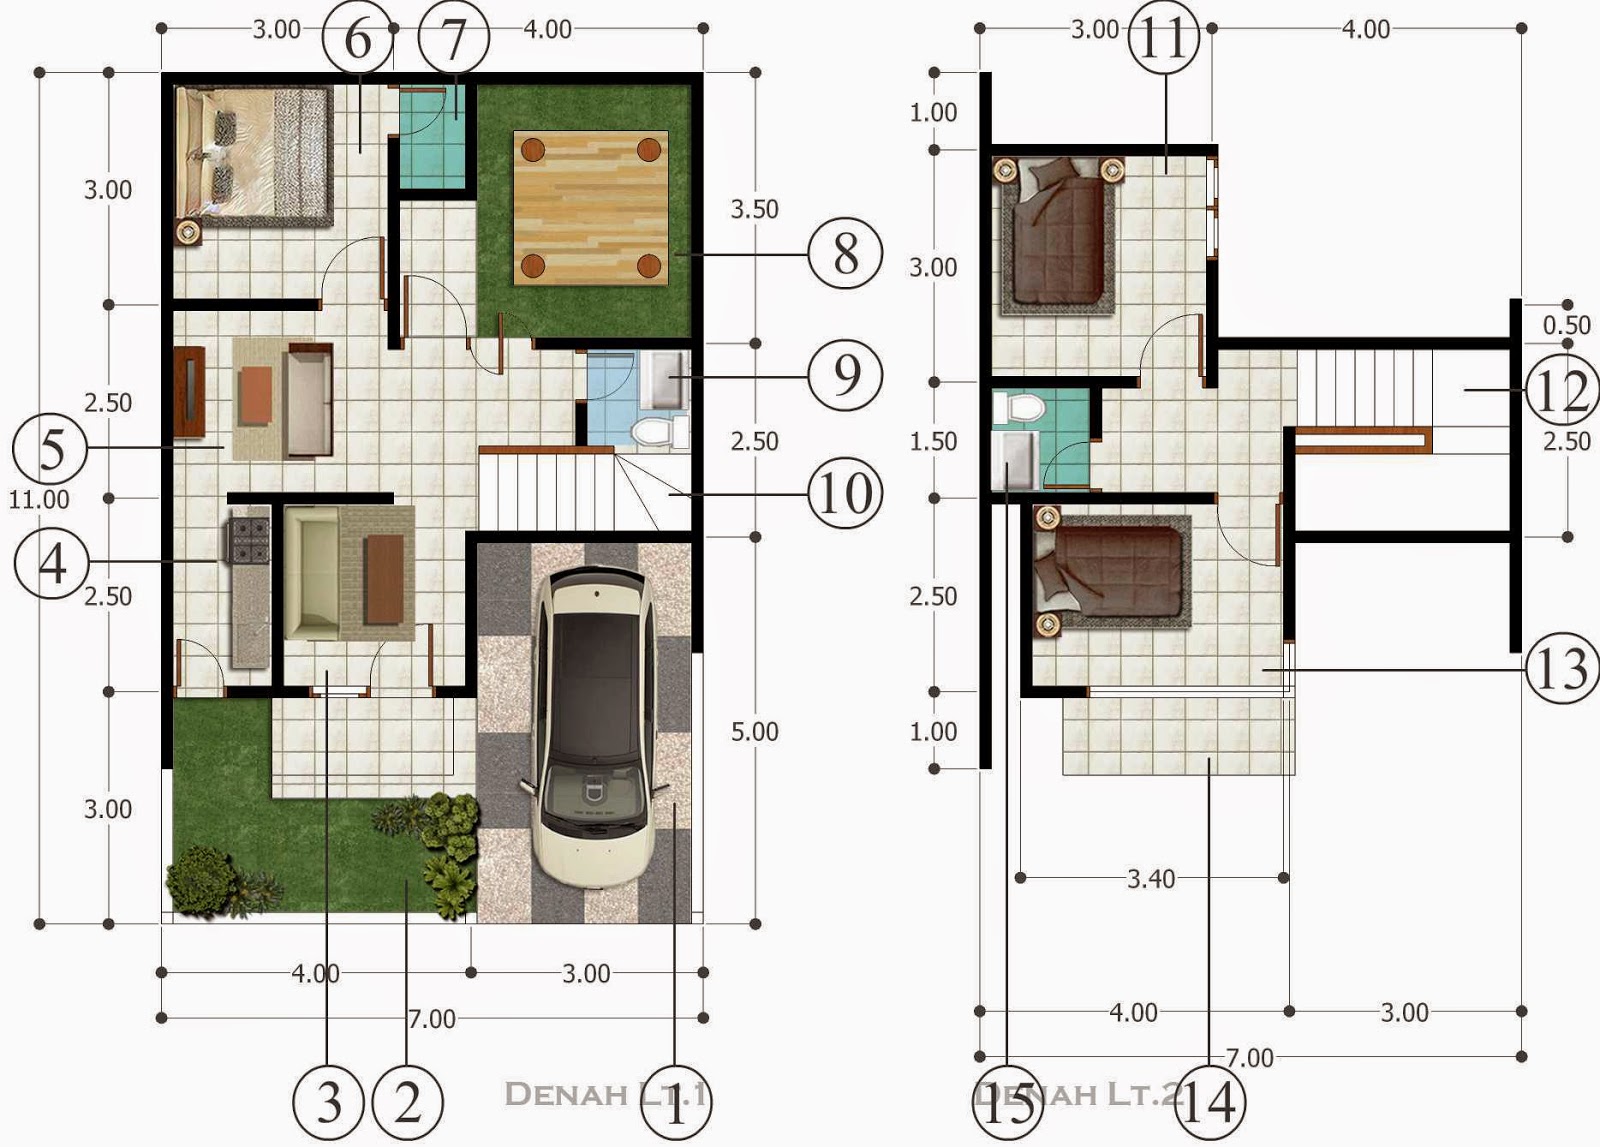 68 Desain Rumah Minimalis Islami Desain Rumah Minimalis Terbaru